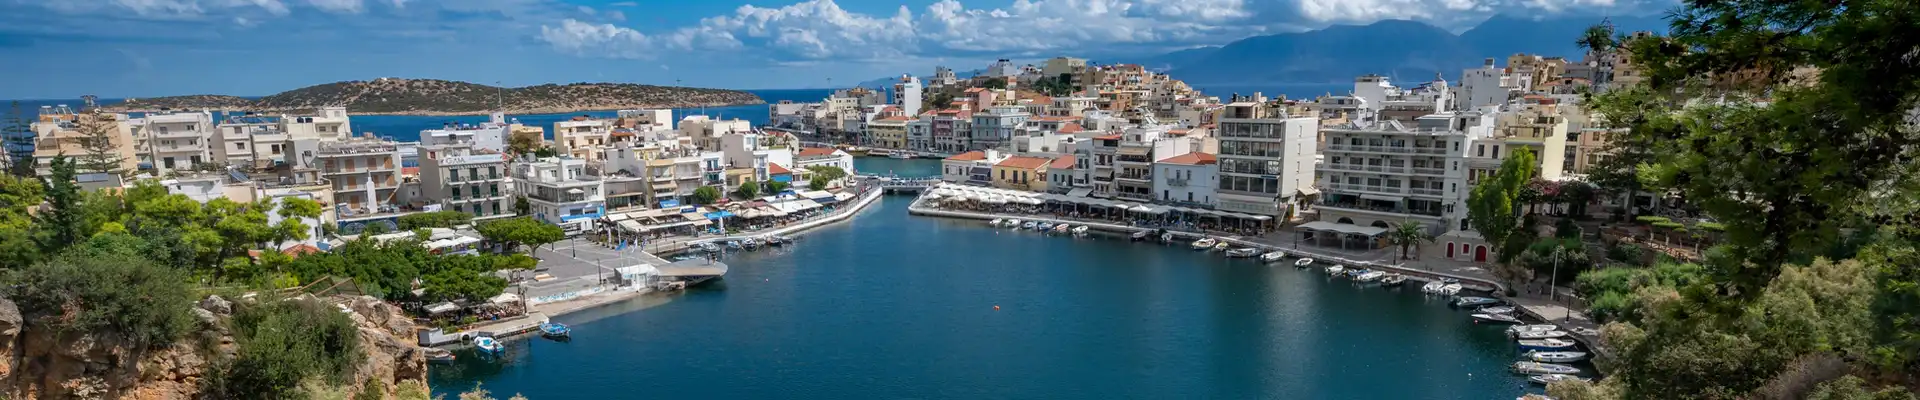 Agios Nikolaos Hafen